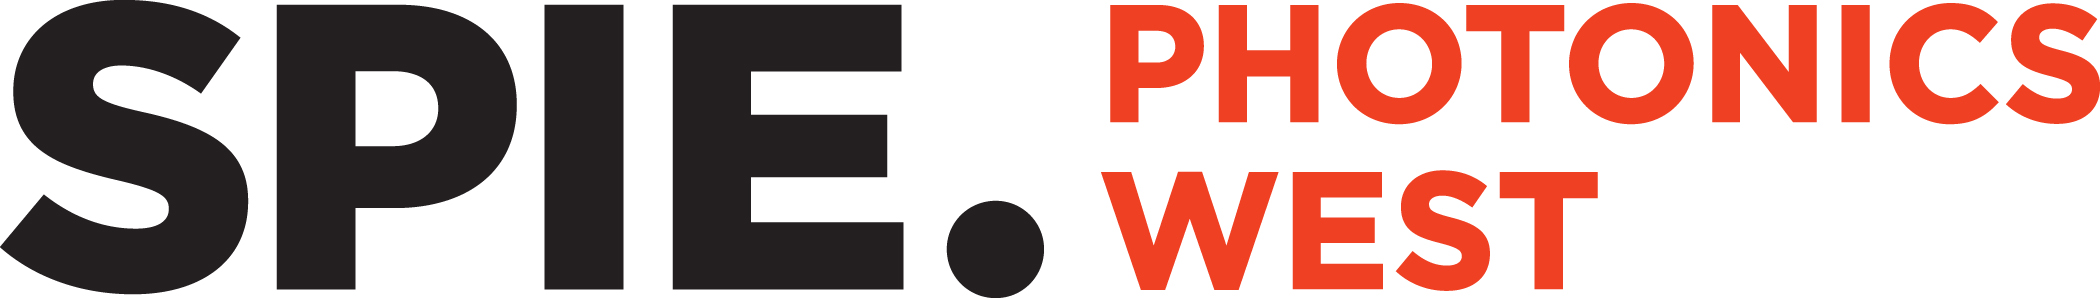 Photonics West 2019 展示会情報―現在設営中―